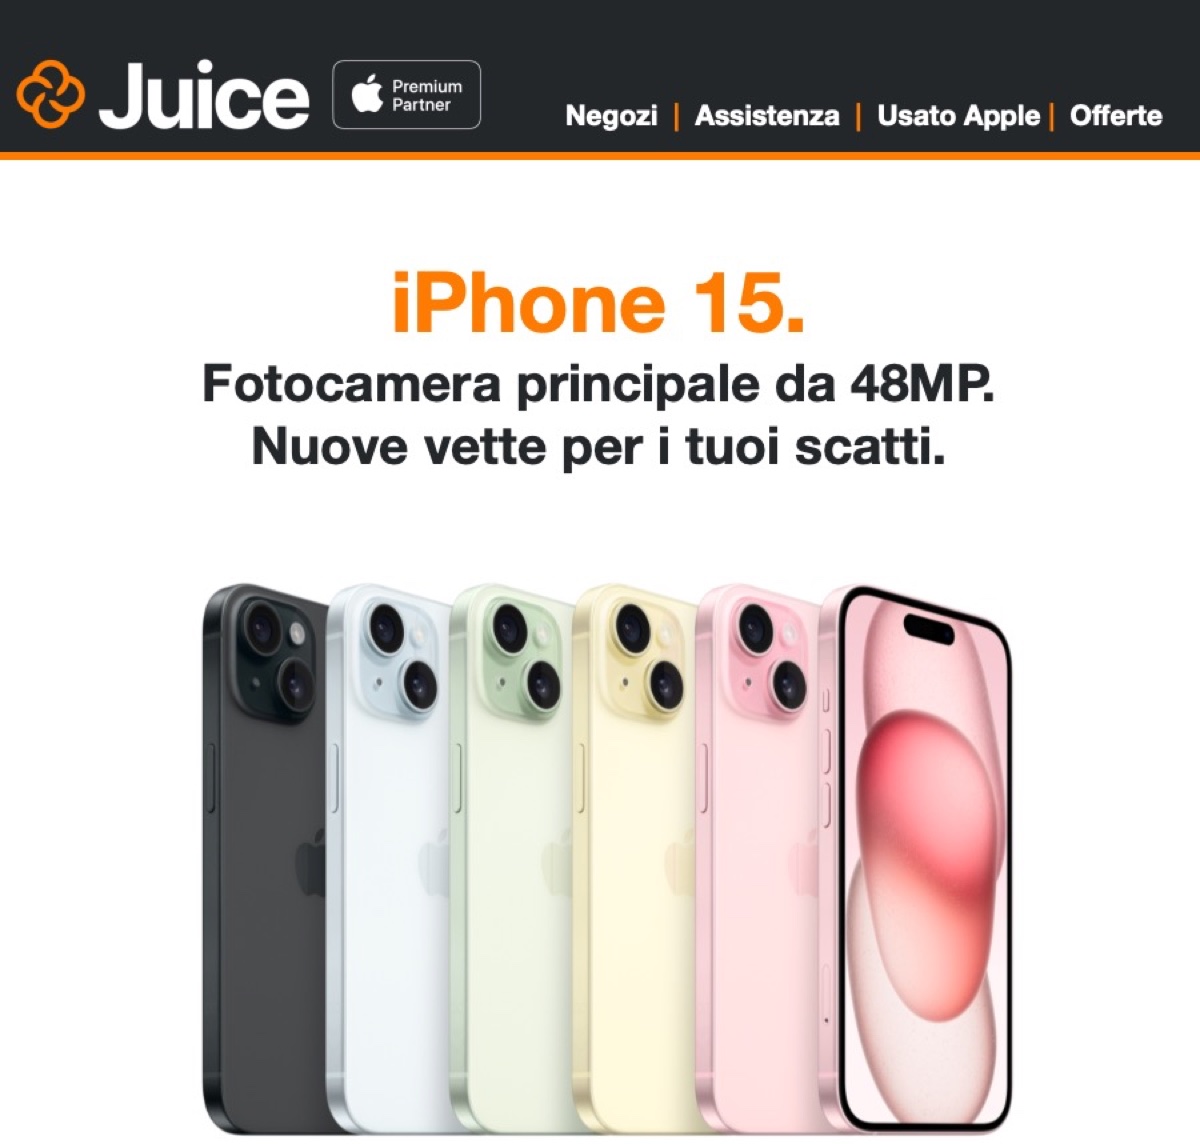 Juice trasforma il tuo iPhone usato in un nuovo iPhone 15